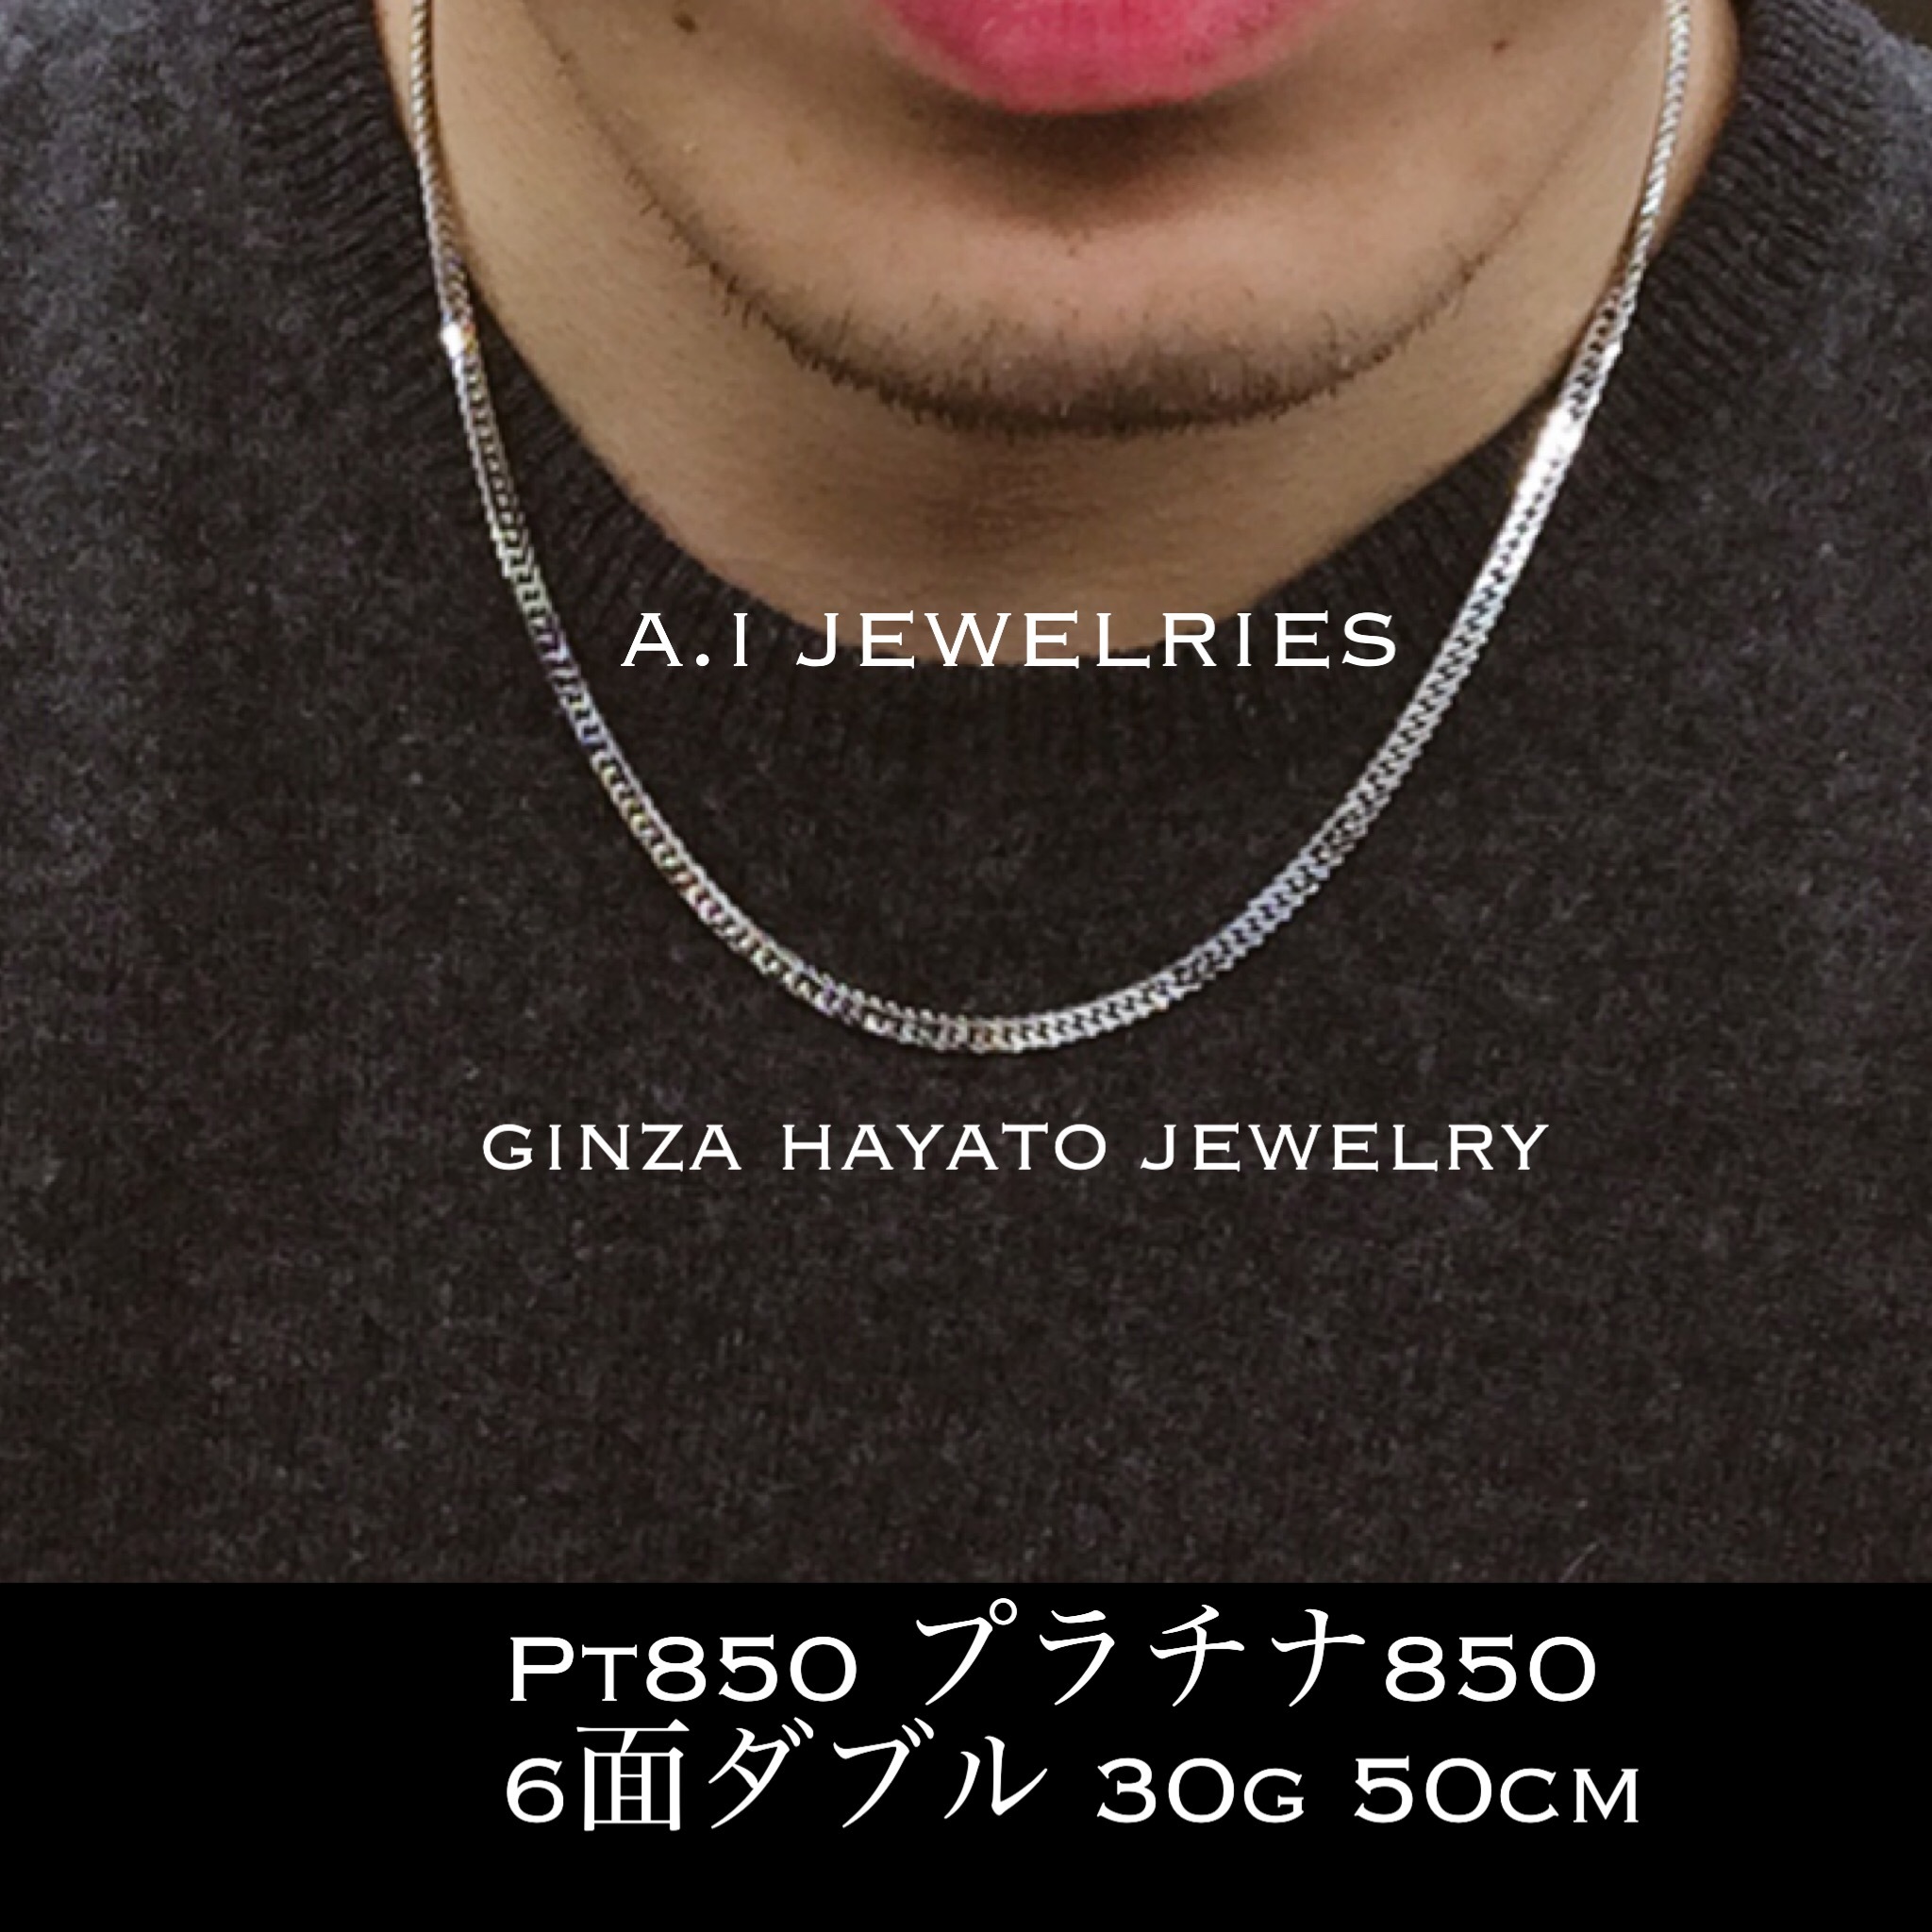 Pt850 プラチナ850 喜平 6面カット ダブル 30g 50cm メンズ ネックレス チェーン 新品 本物 資産 A I Jewelries エイアイジュエリーズ